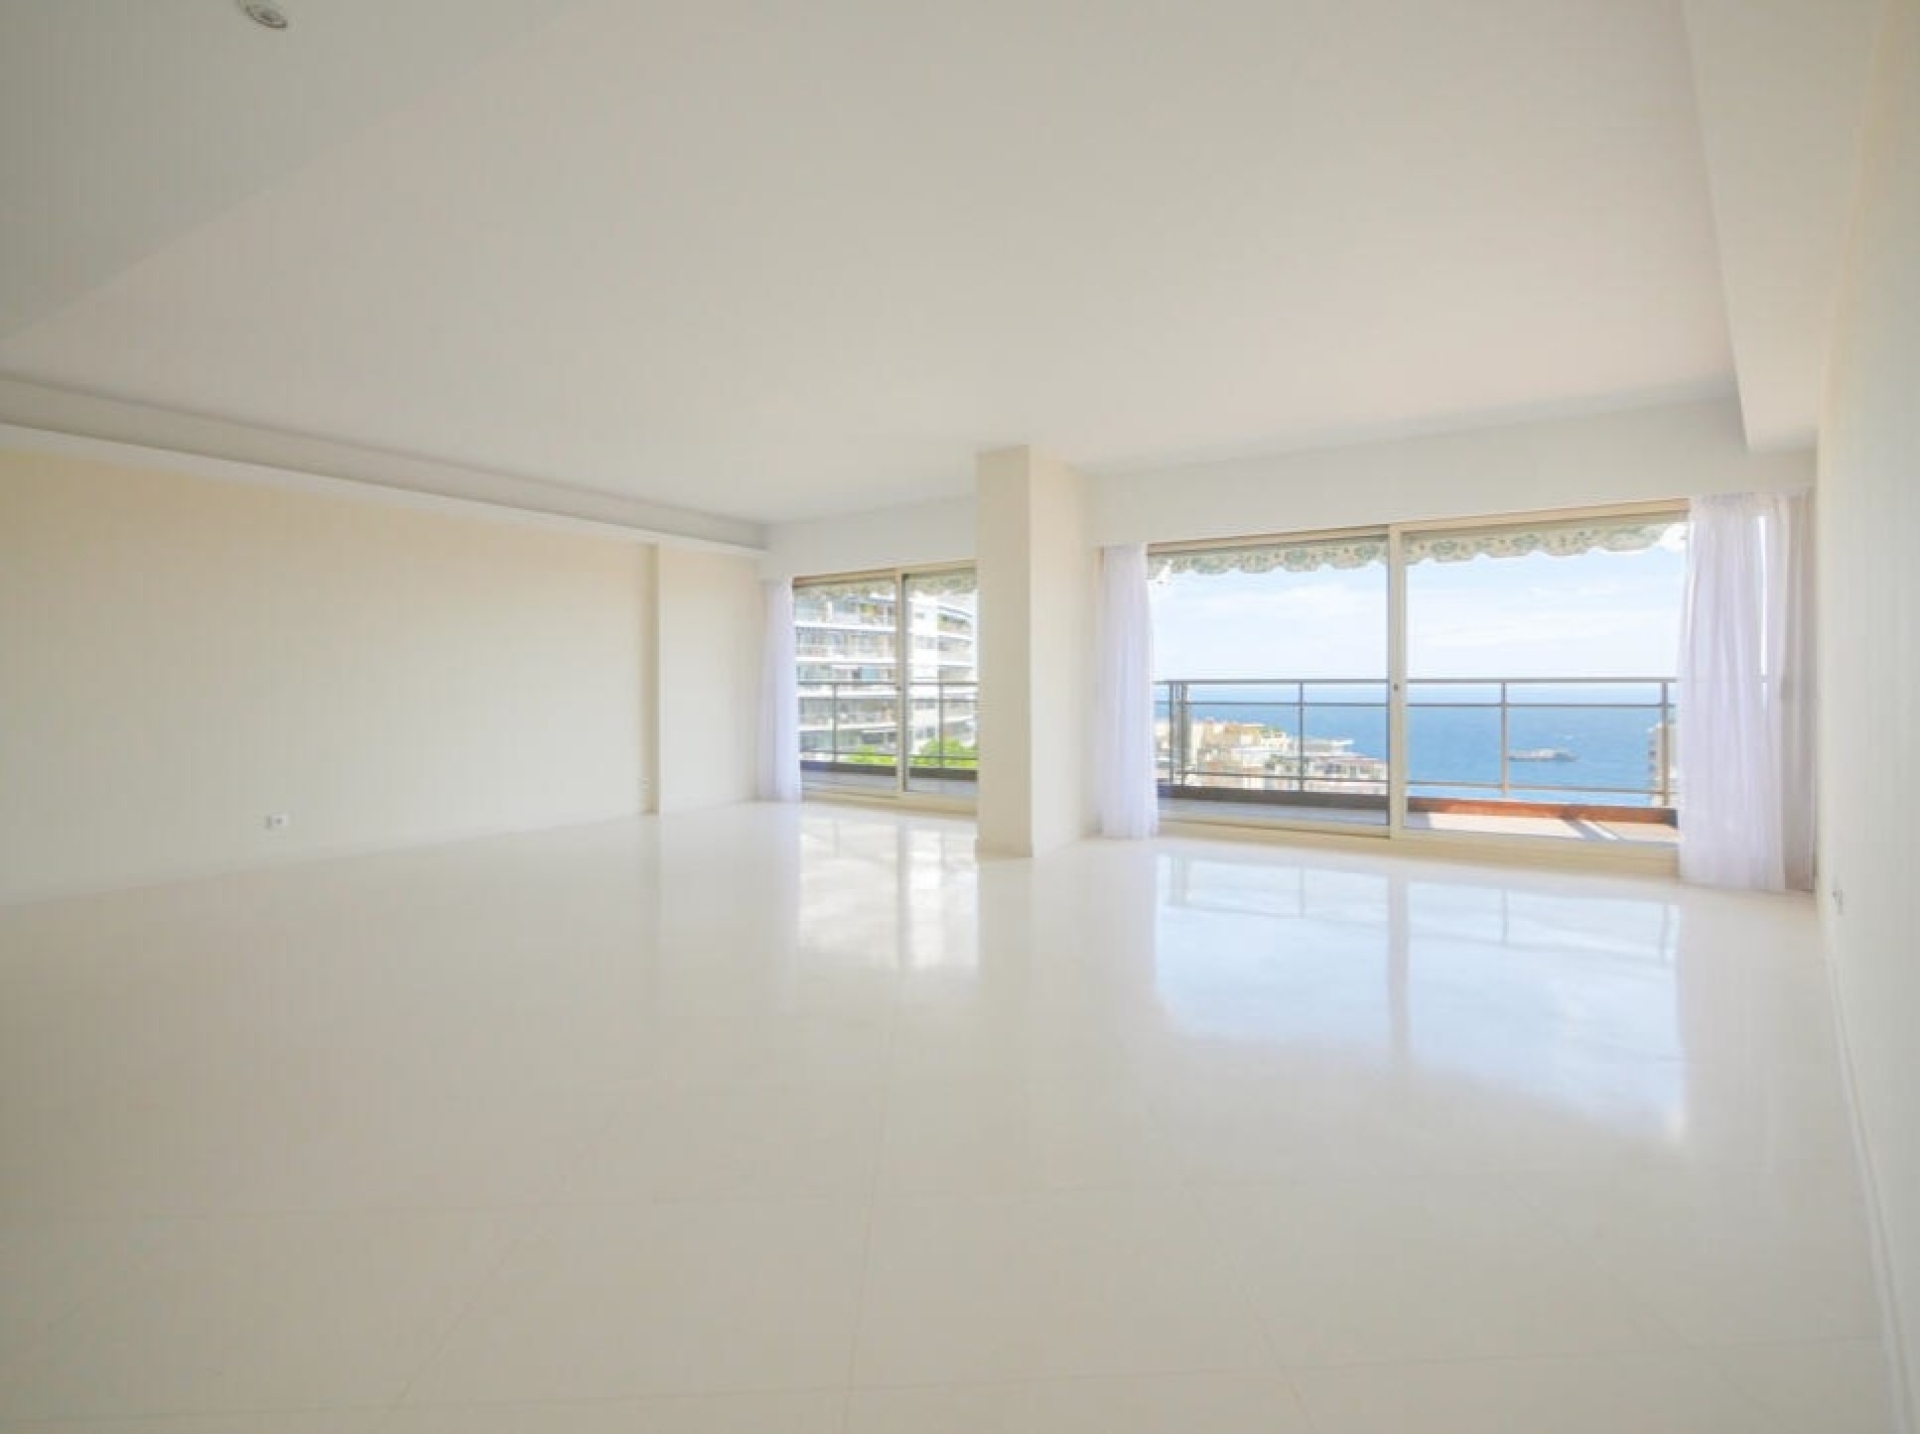 Dotta Appartement de 4 pieces a vendre - ANNONCIADE - La Rousse - Monaco - imgimage3